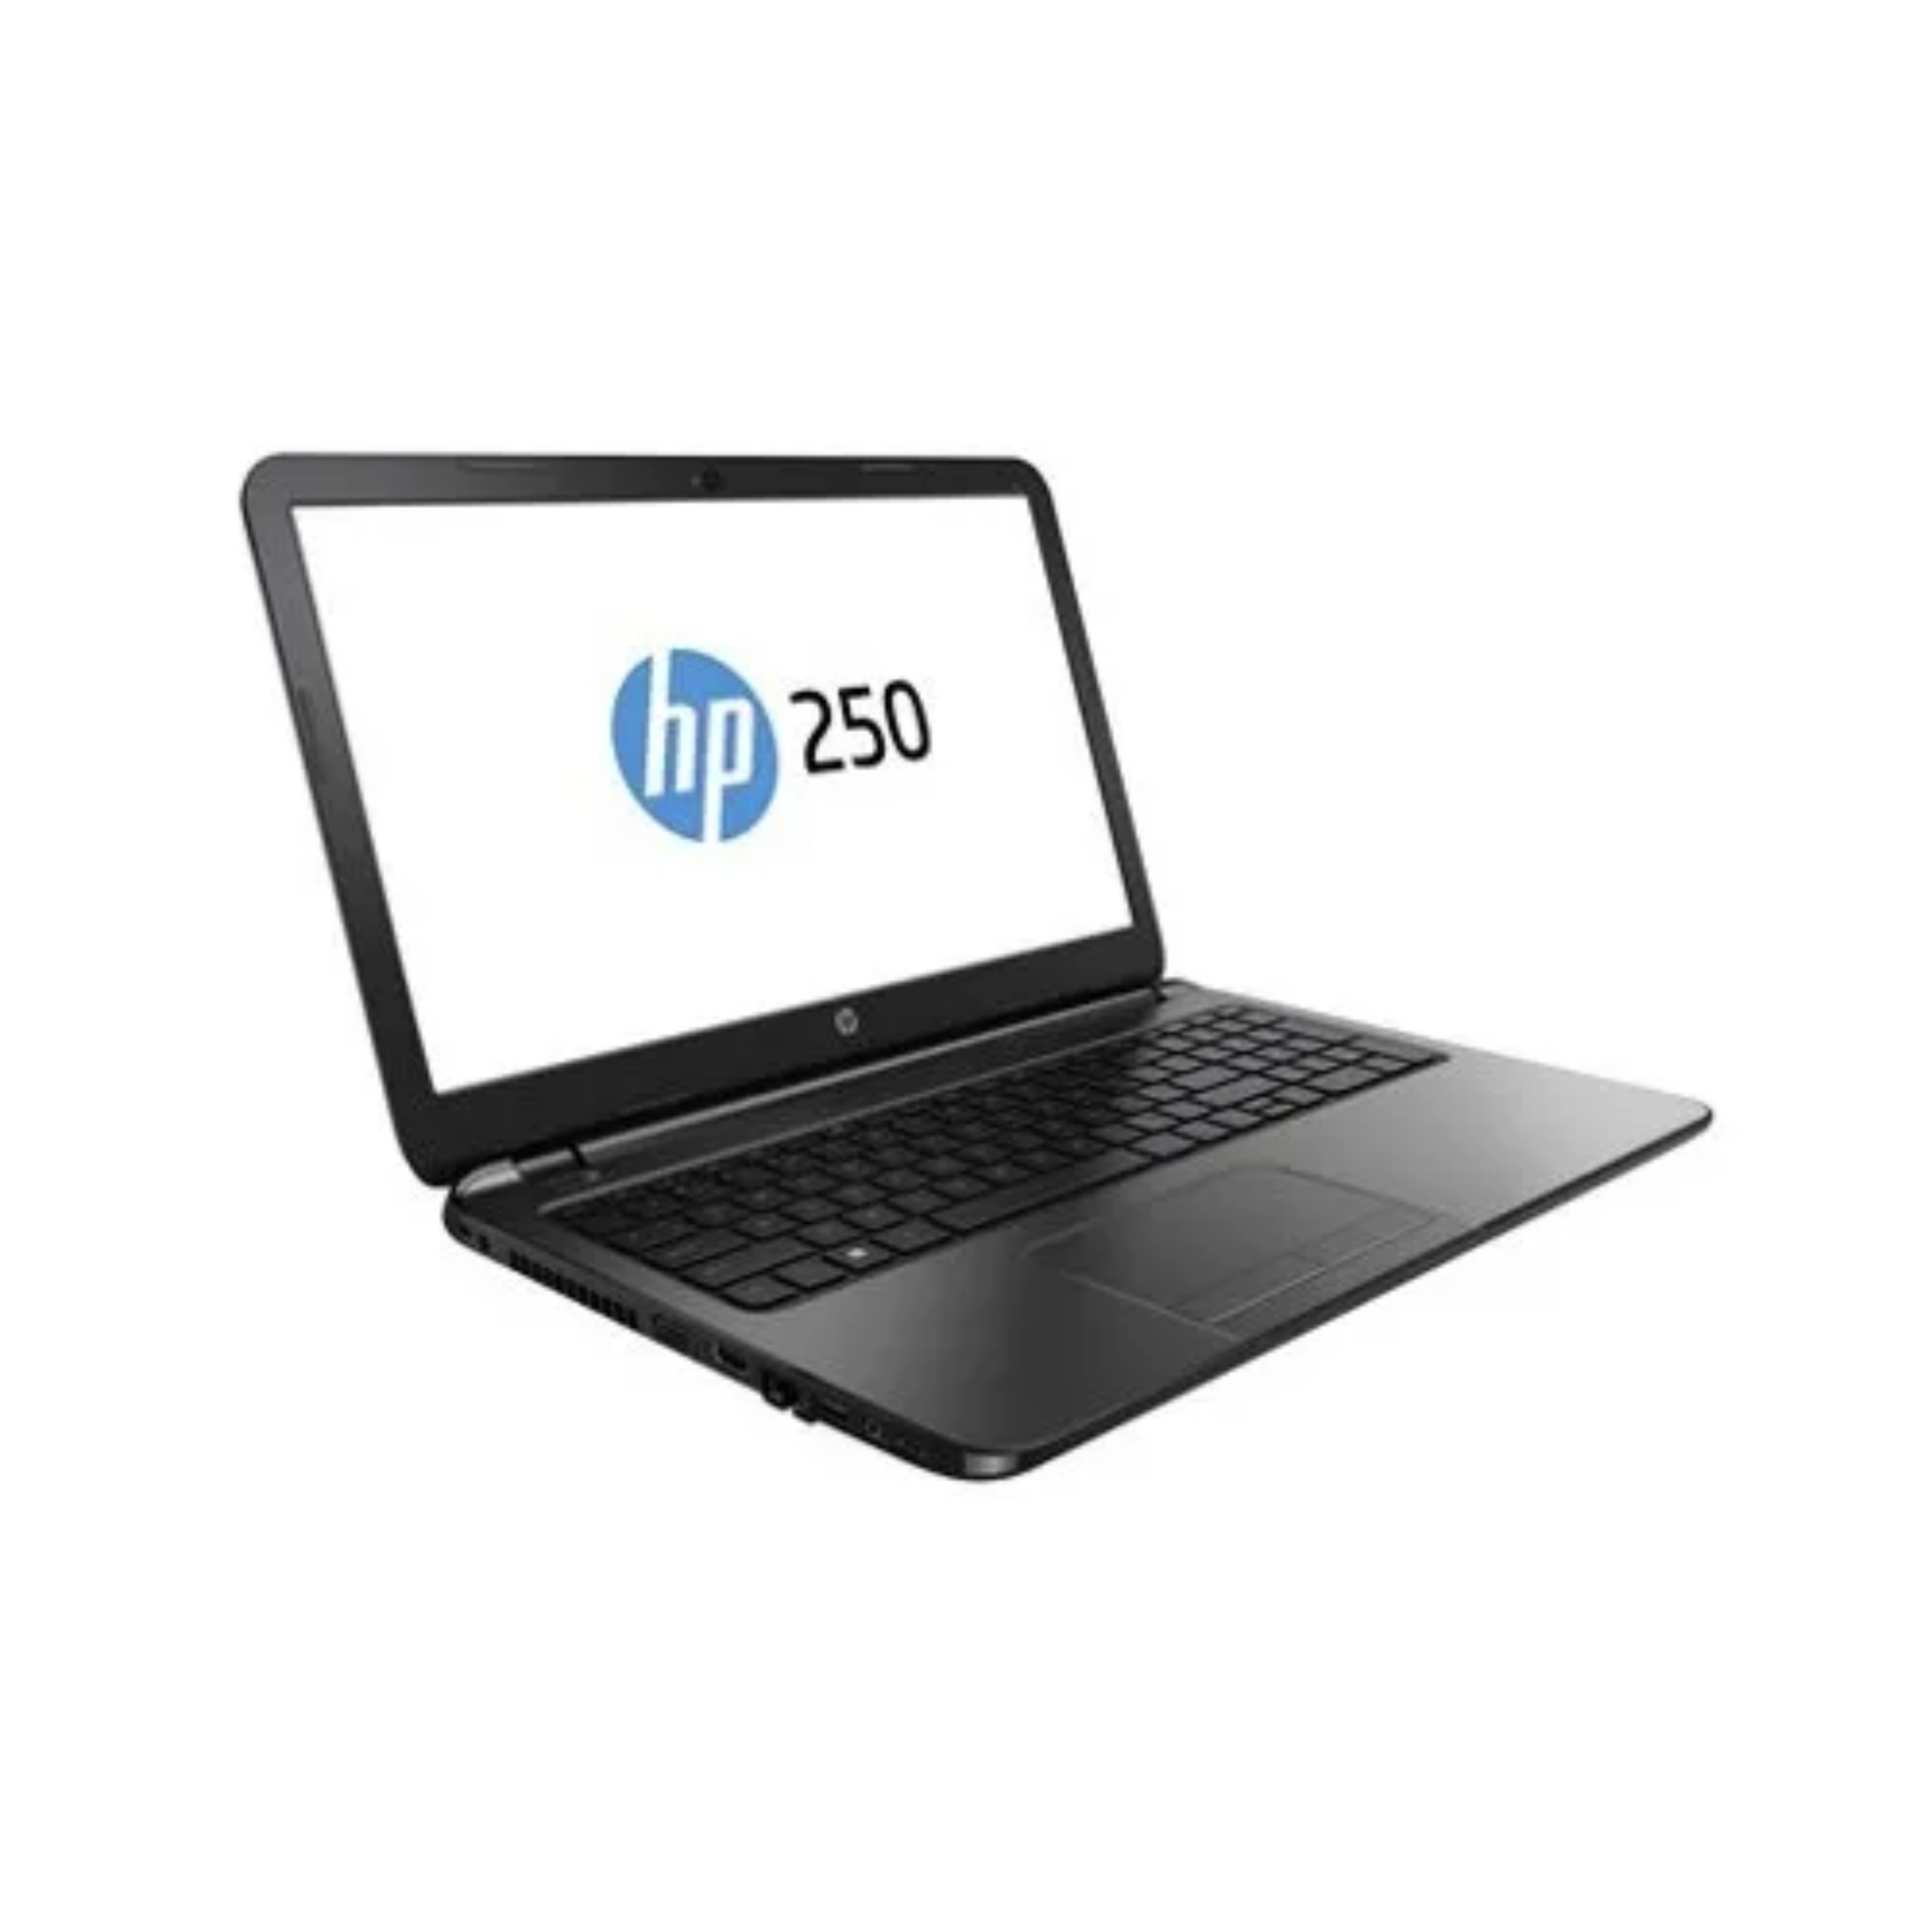 Desktop – HP 250 G3 / INTEL N2840 / 120GB SSD / 4GB / 15.6″ / INTEL HD 6500 / W10